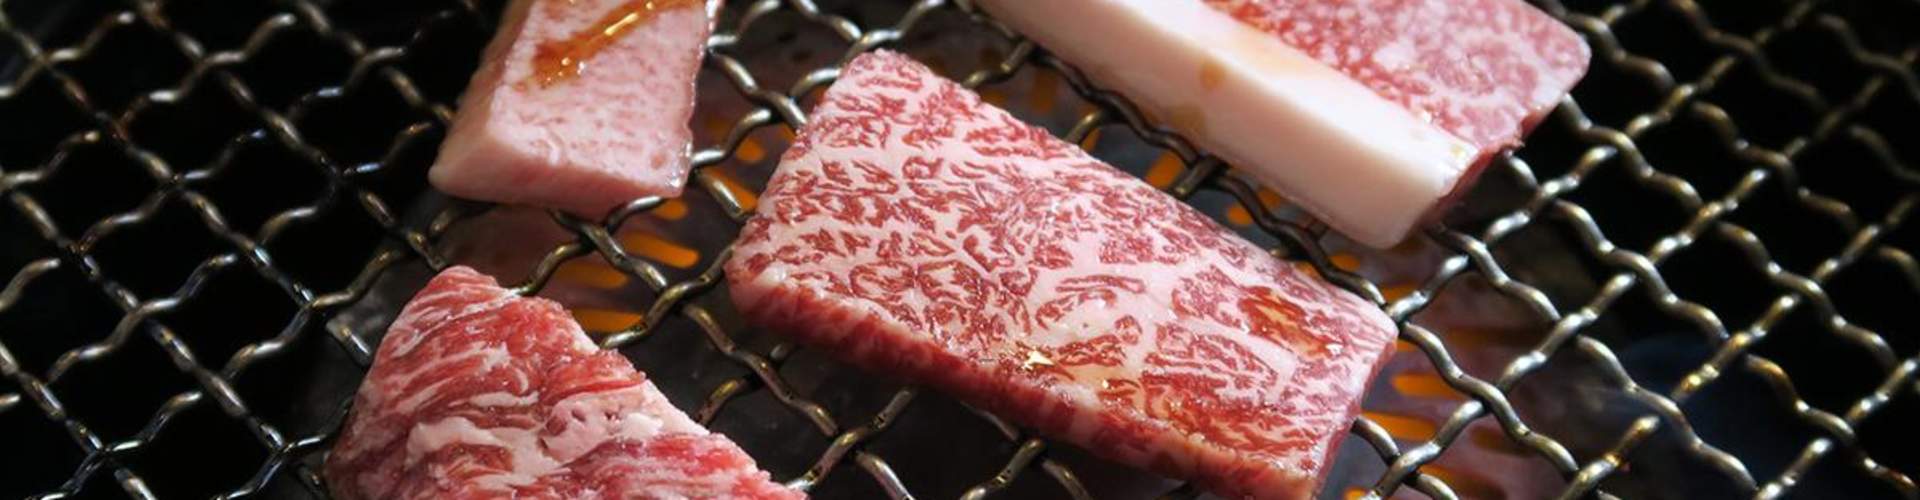 日本和牛烤肉 Klook客路